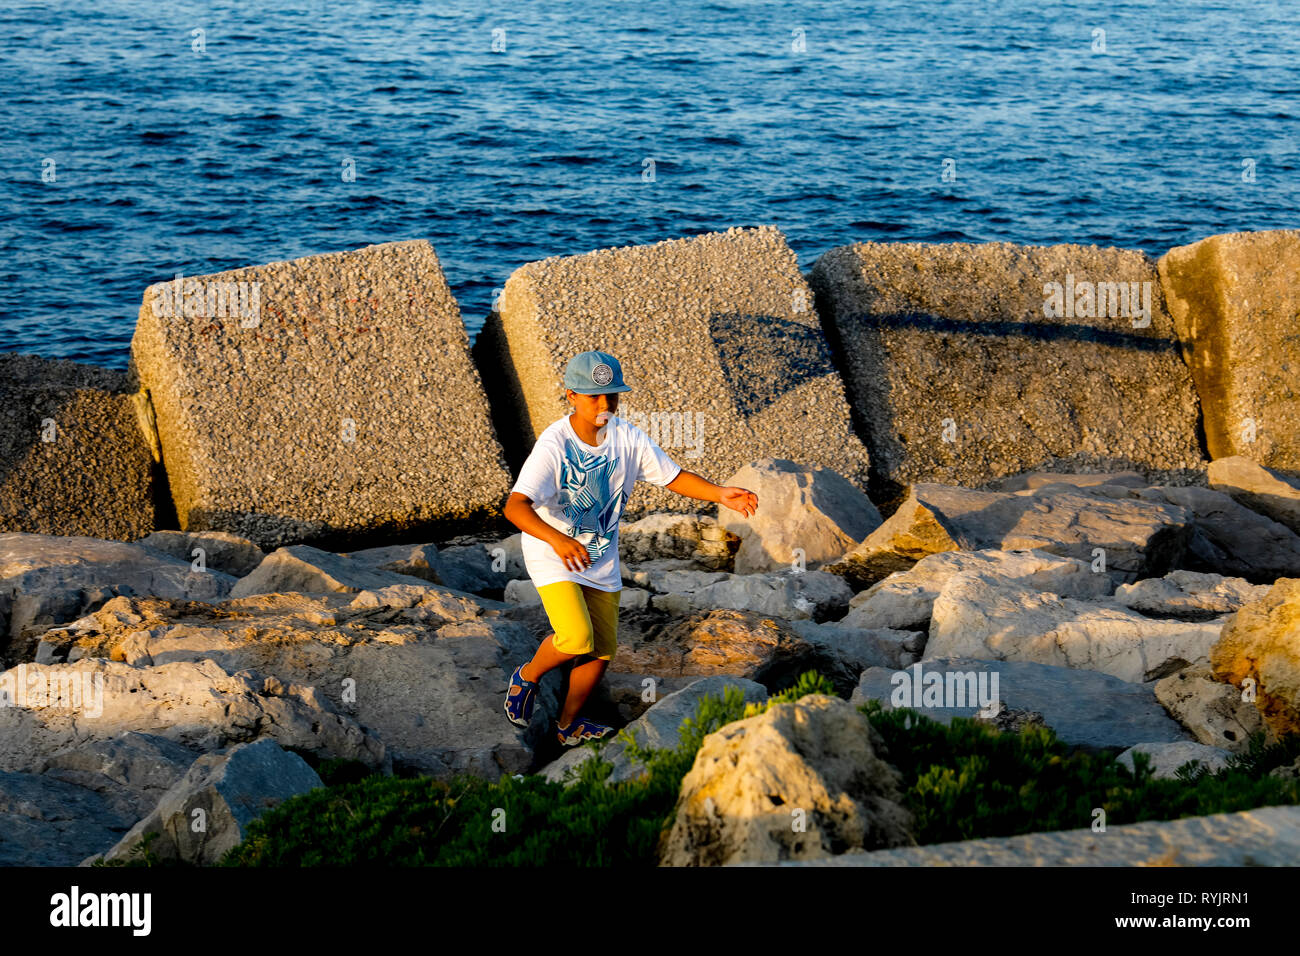 12-año-viejo muchacho caminando junto a la orilla del mar en Palermo, Sicilia (Italia). Foto de stock